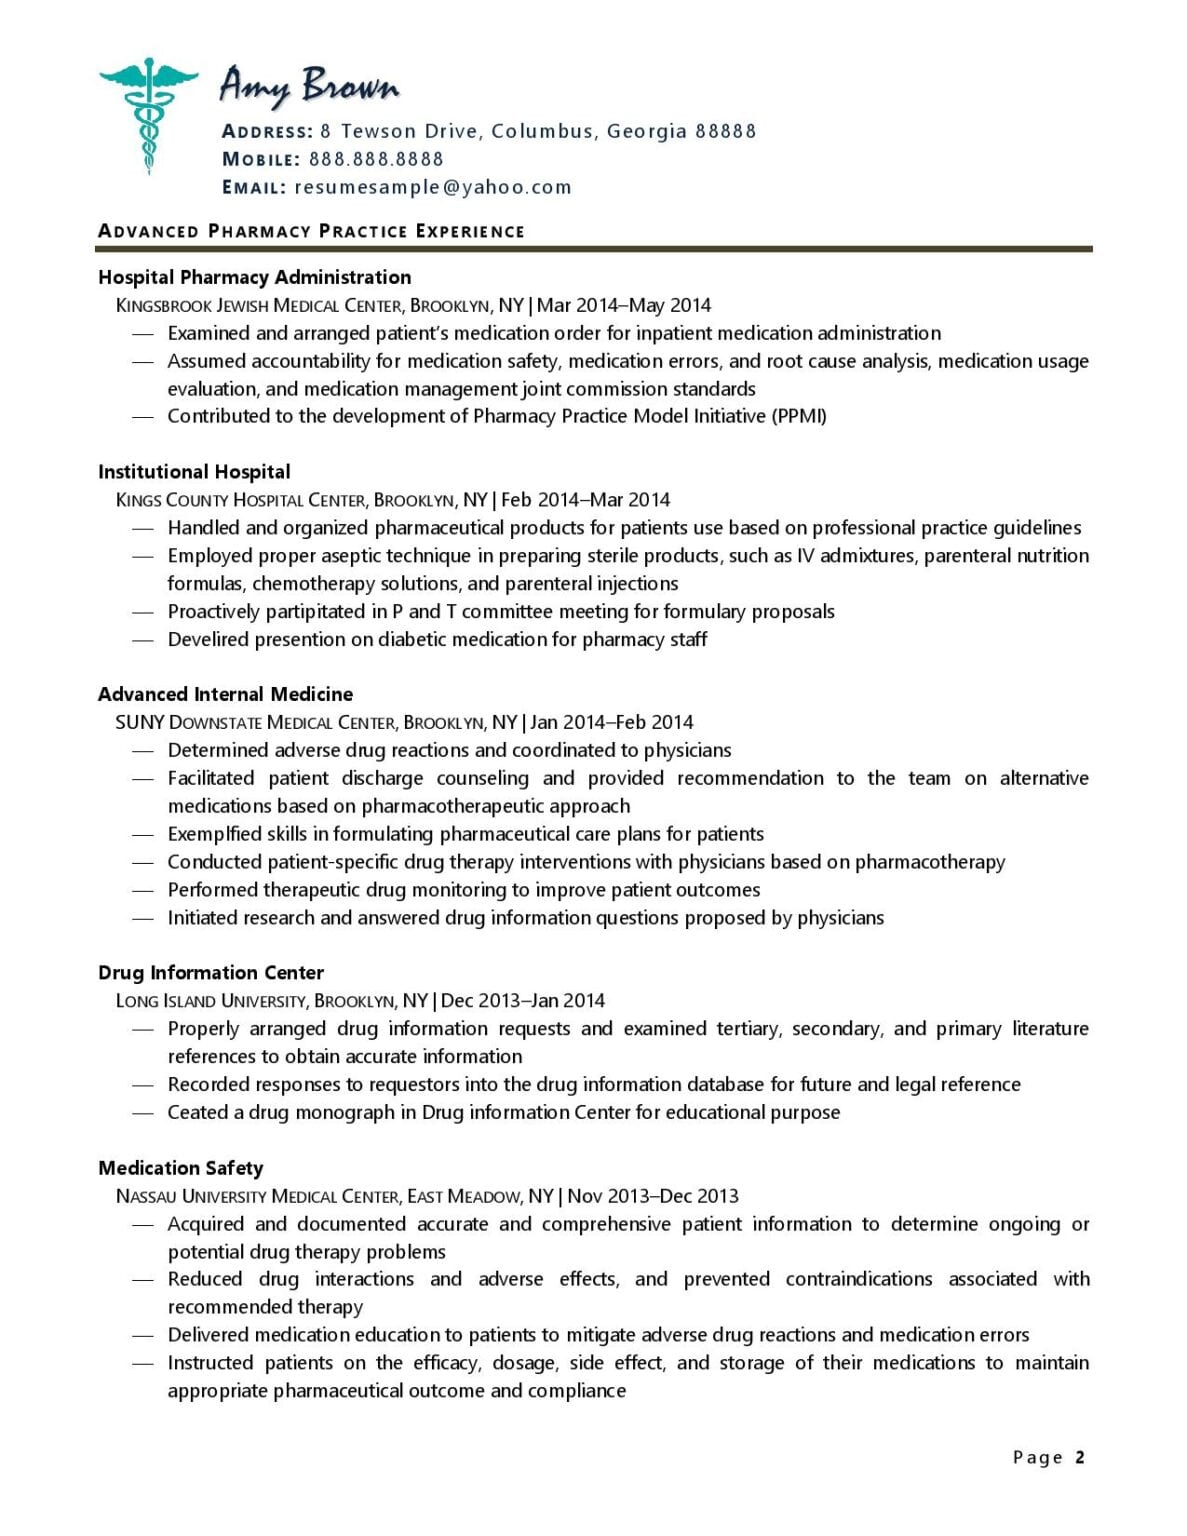 resume format in pharmacy